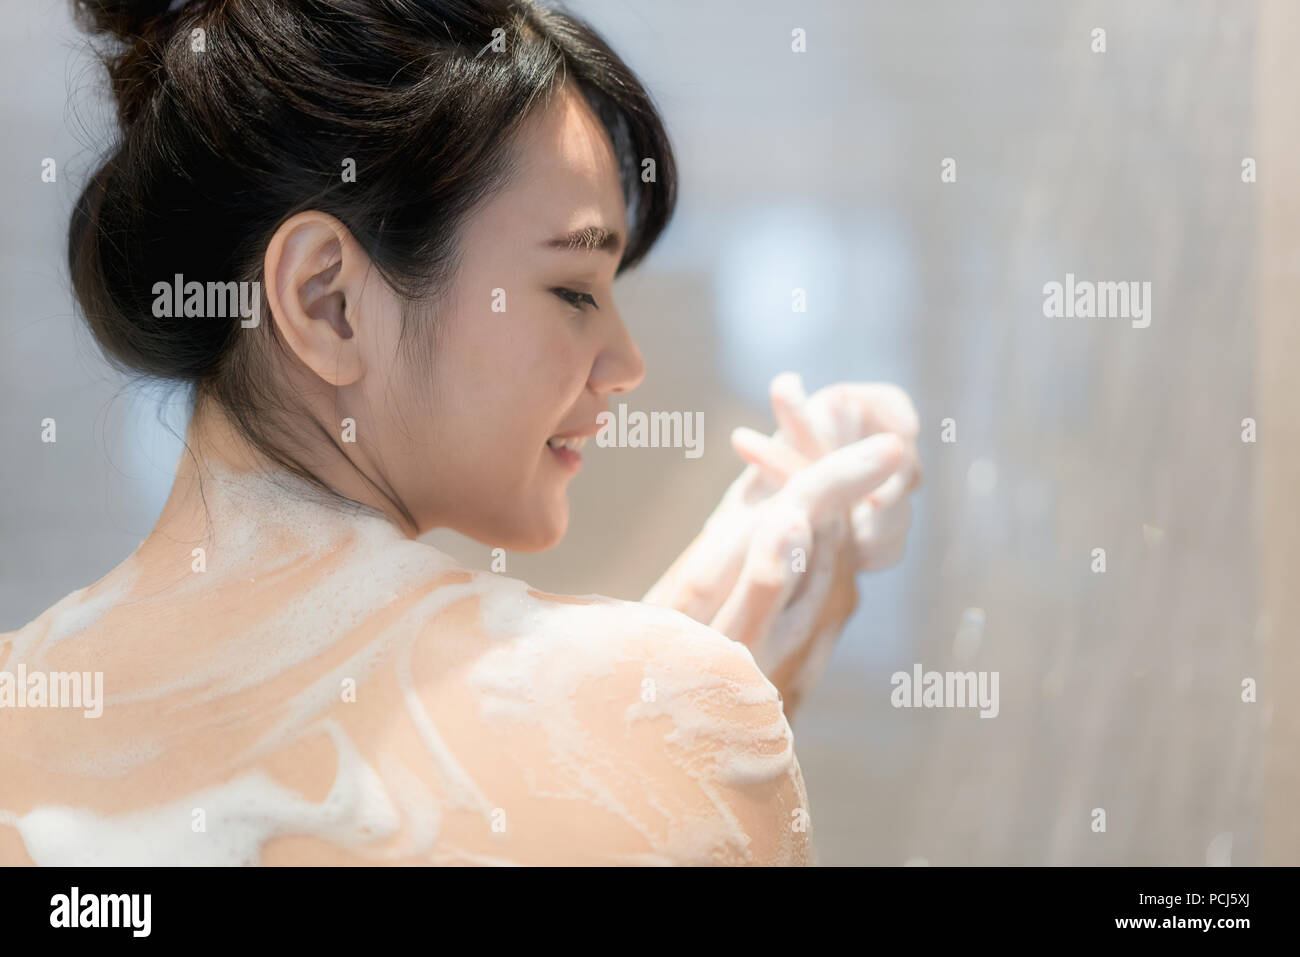 Junge asiatische Frau unter der Dusche im Badezimmer mit Dusche. Suchen glücklich und entspannen. Stockfoto